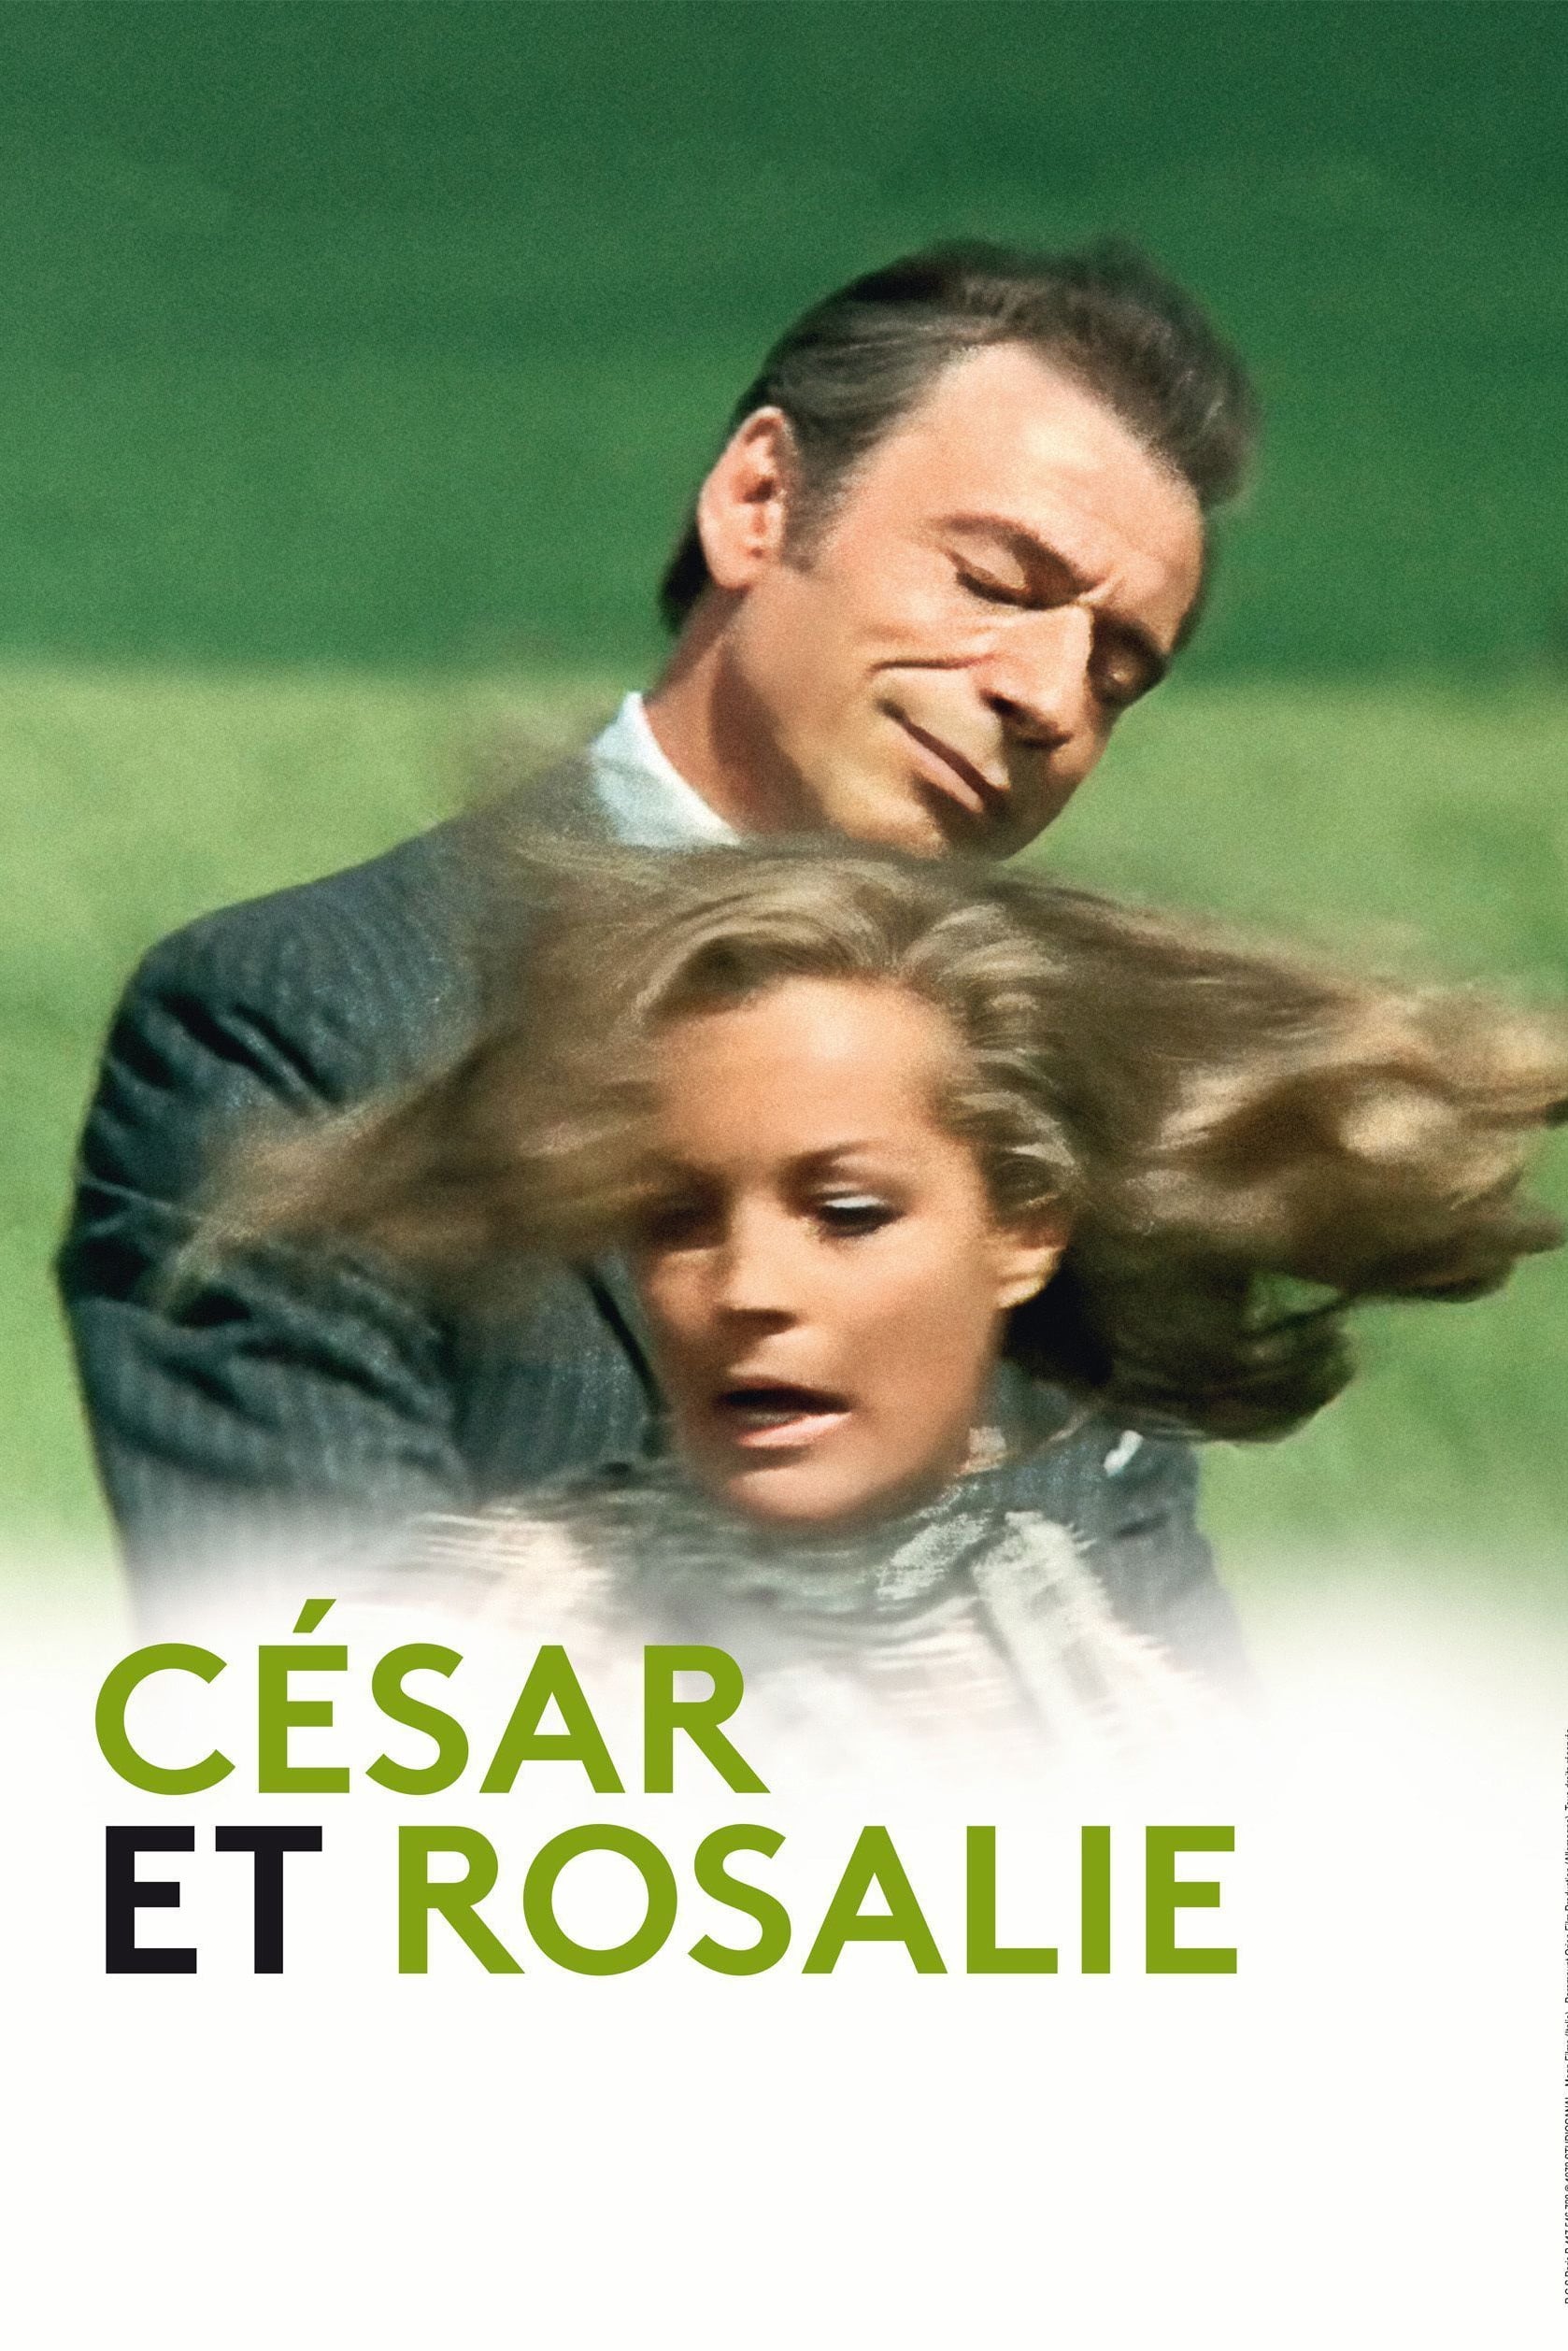 César und Rosalie (1972)